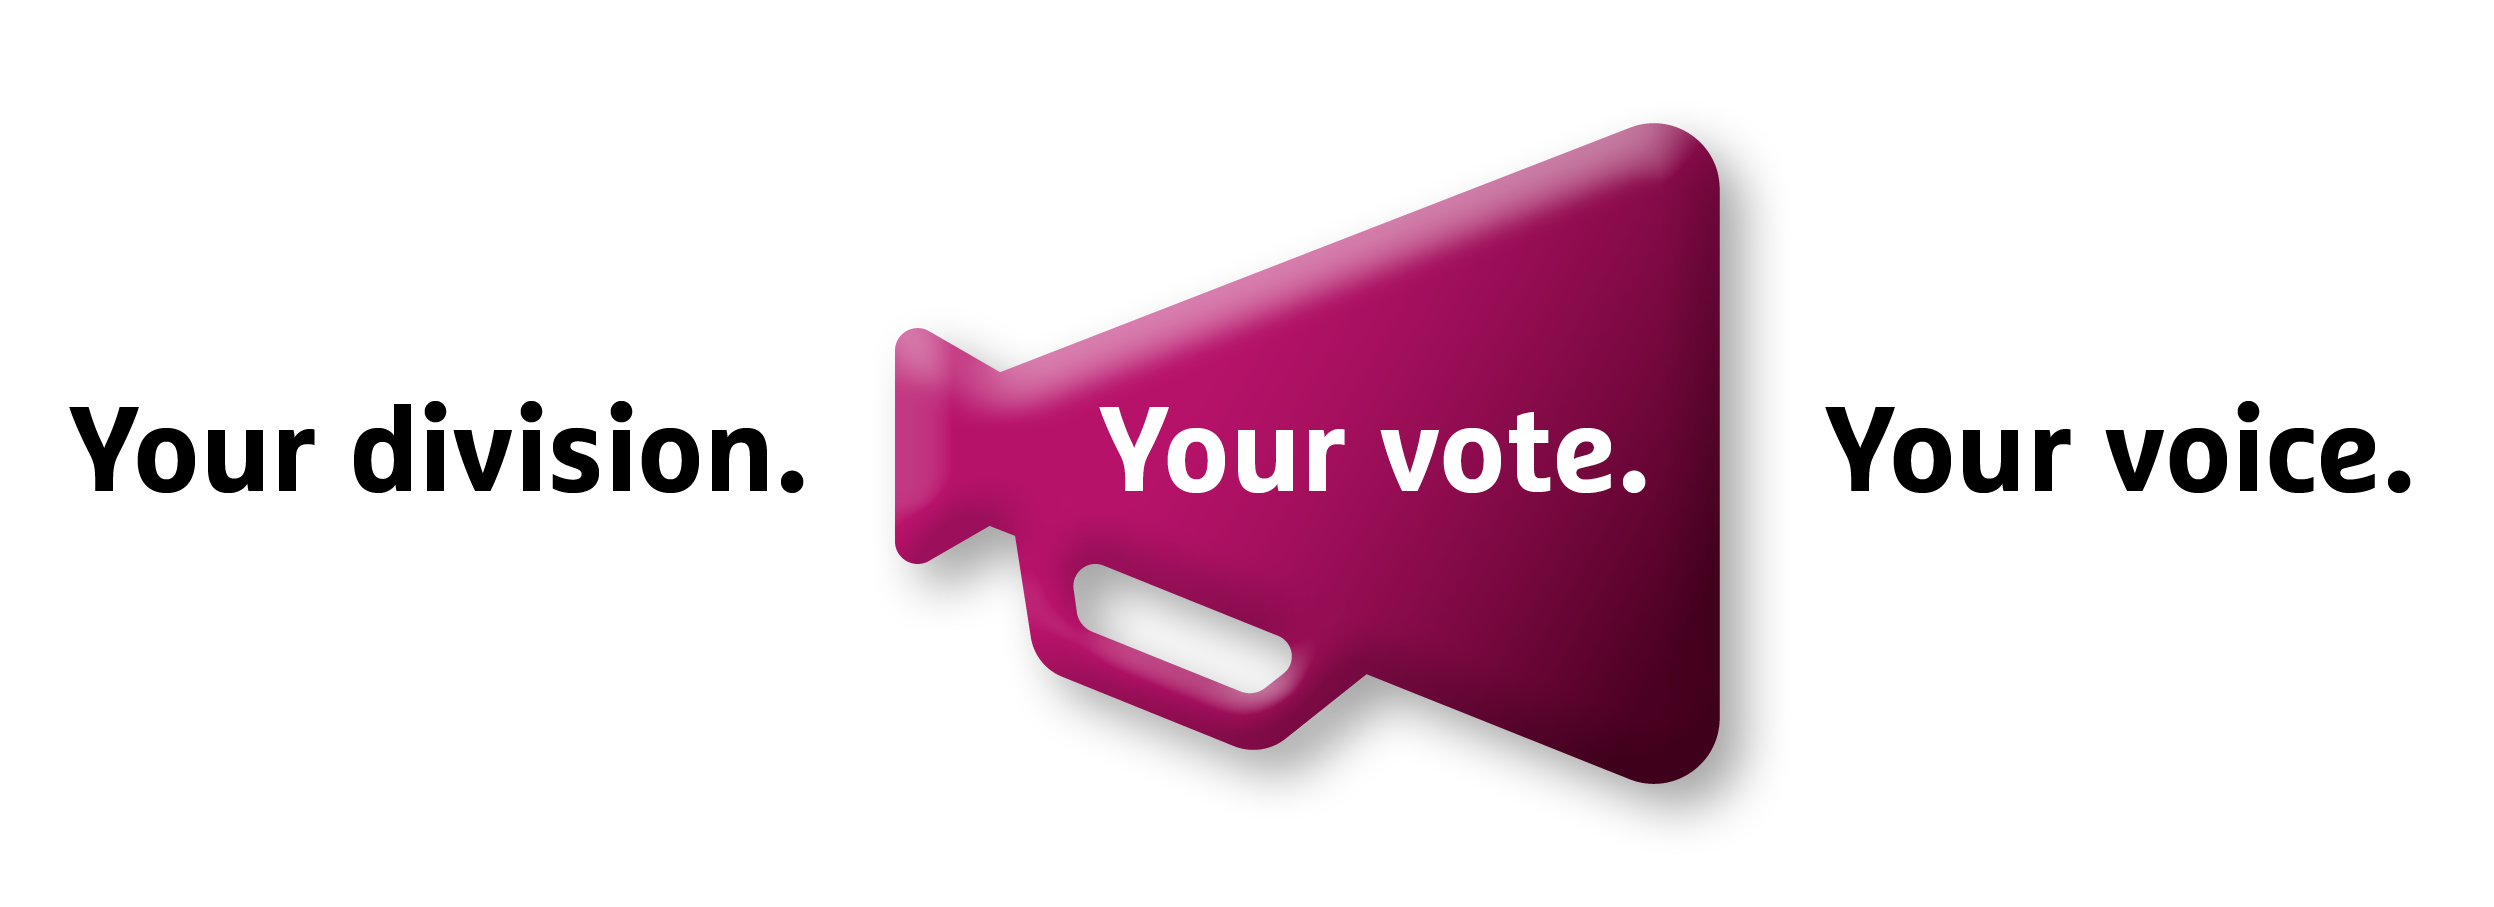 Legislative Council election tagline - Your division. Your vote. Your voice.